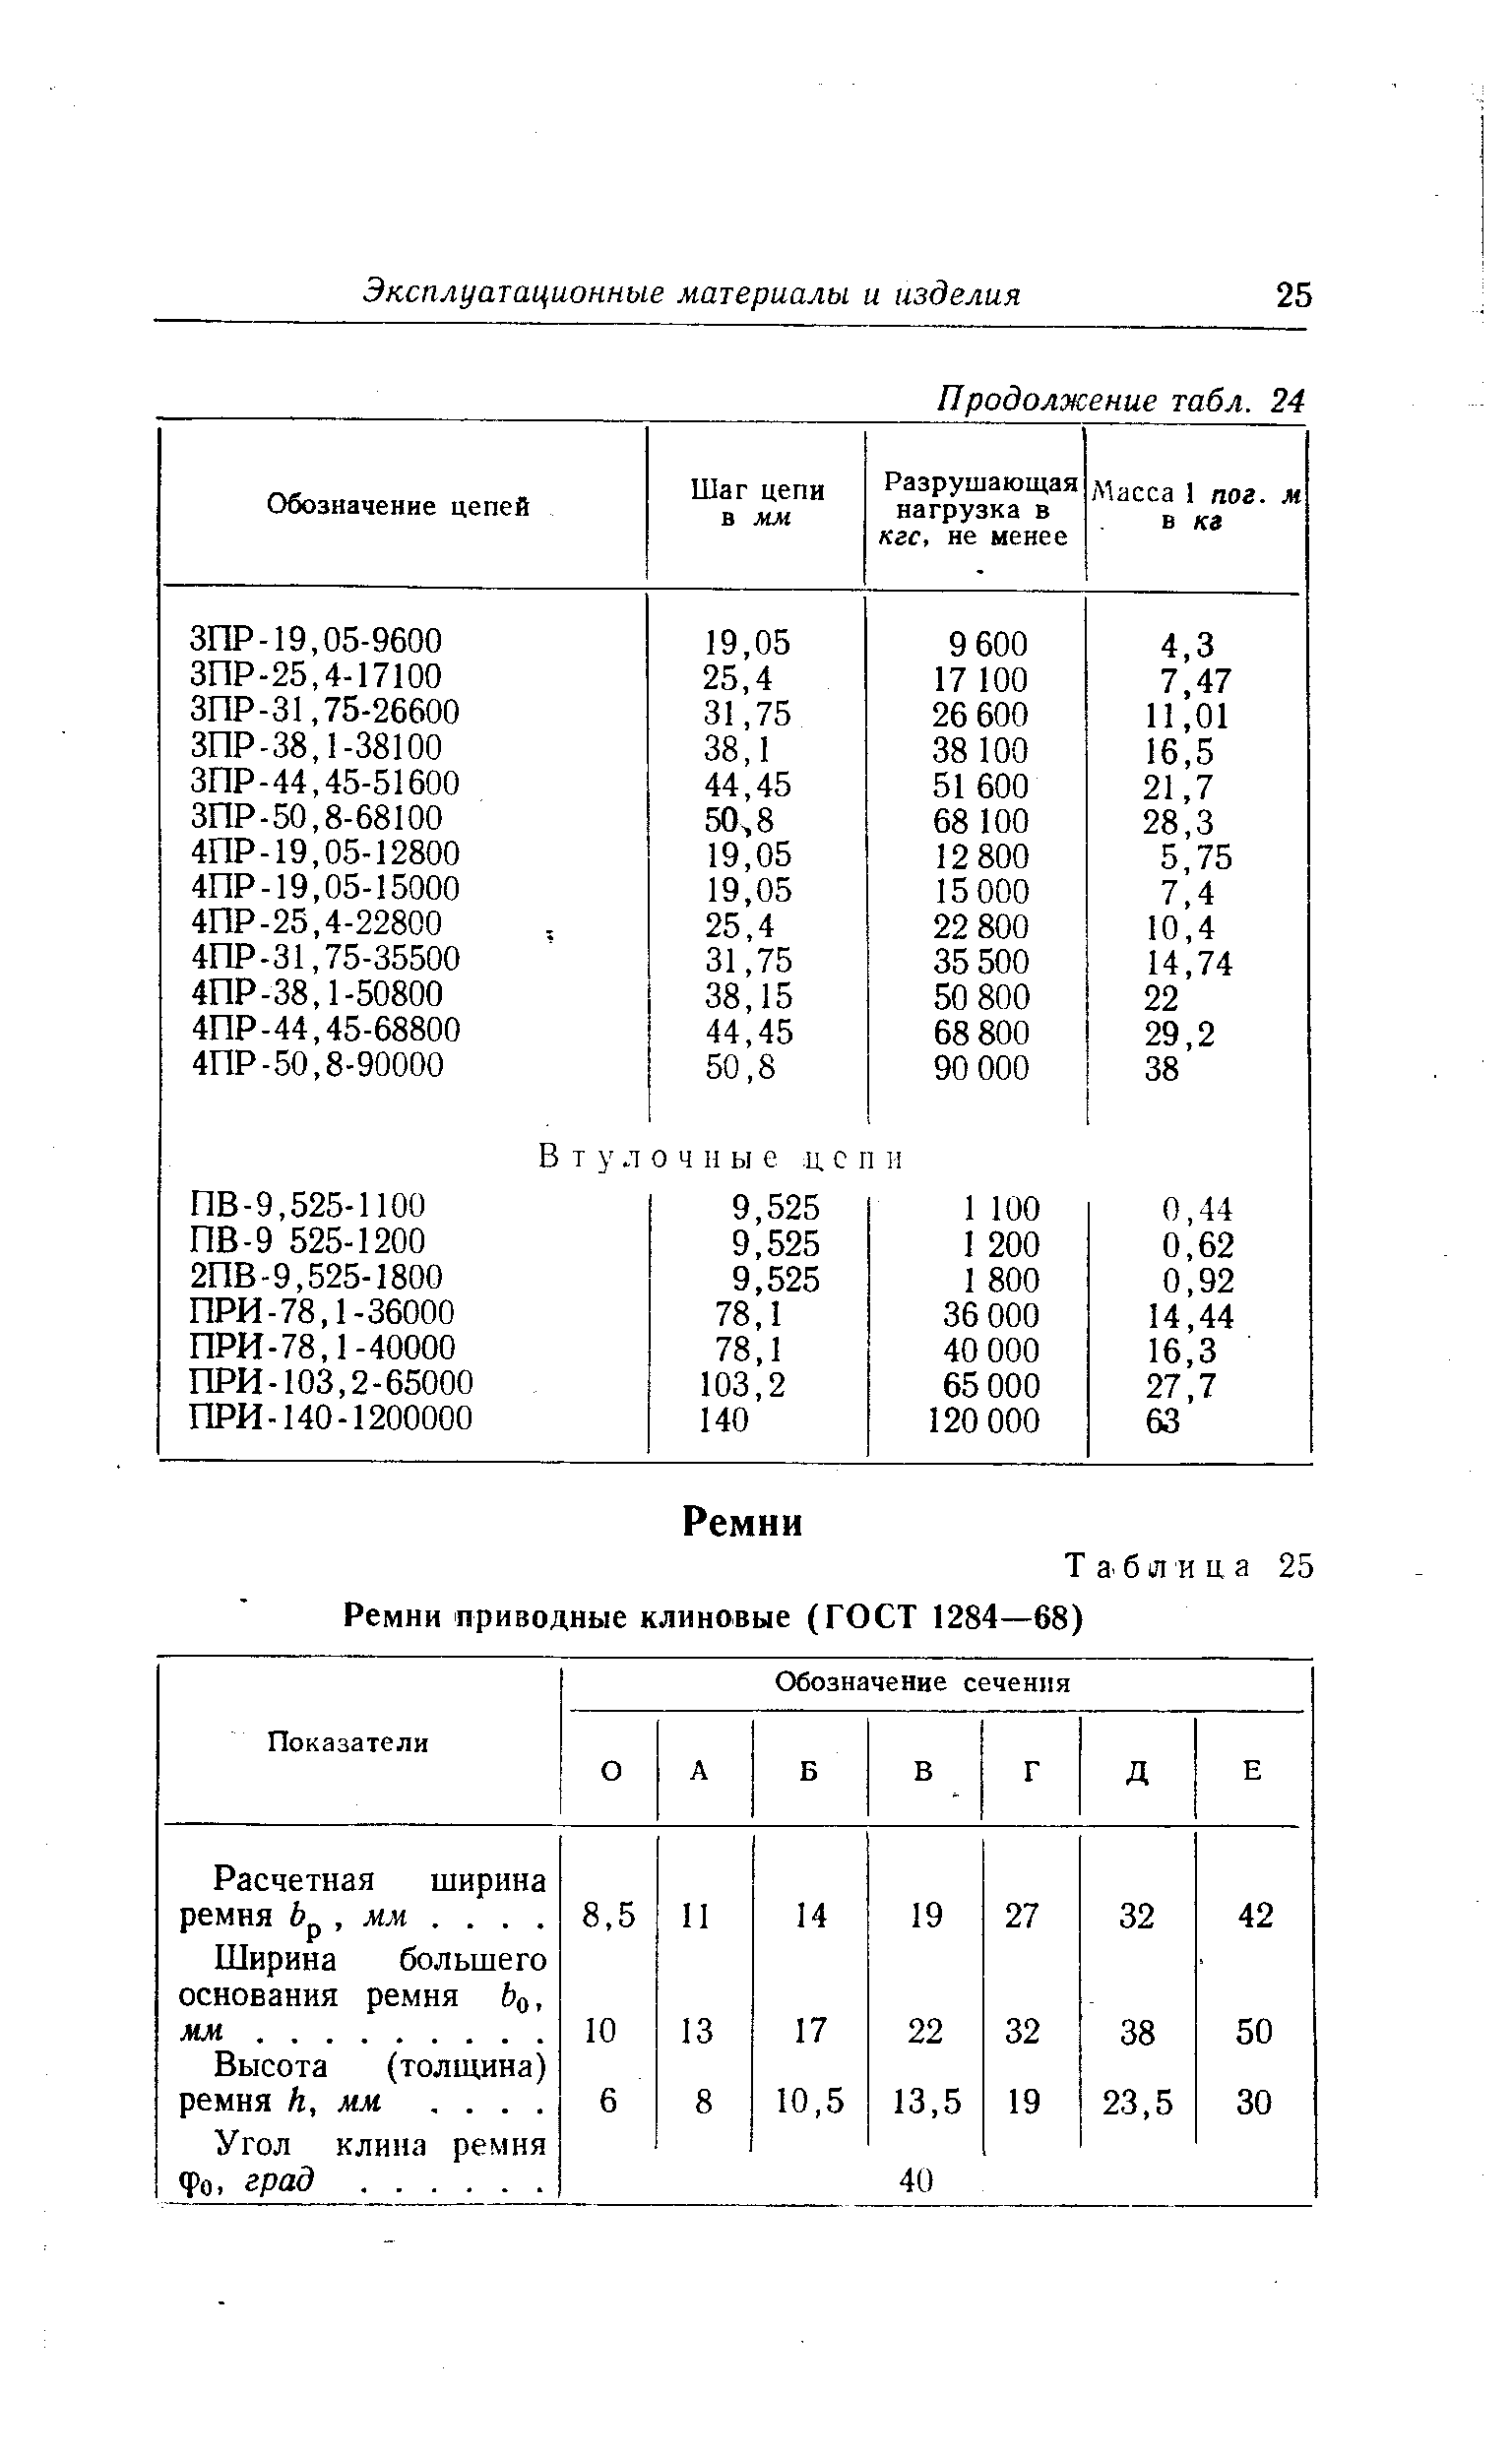 Таблица 25 Ремни приводные клиновые (ГОСТ 1284—68)
